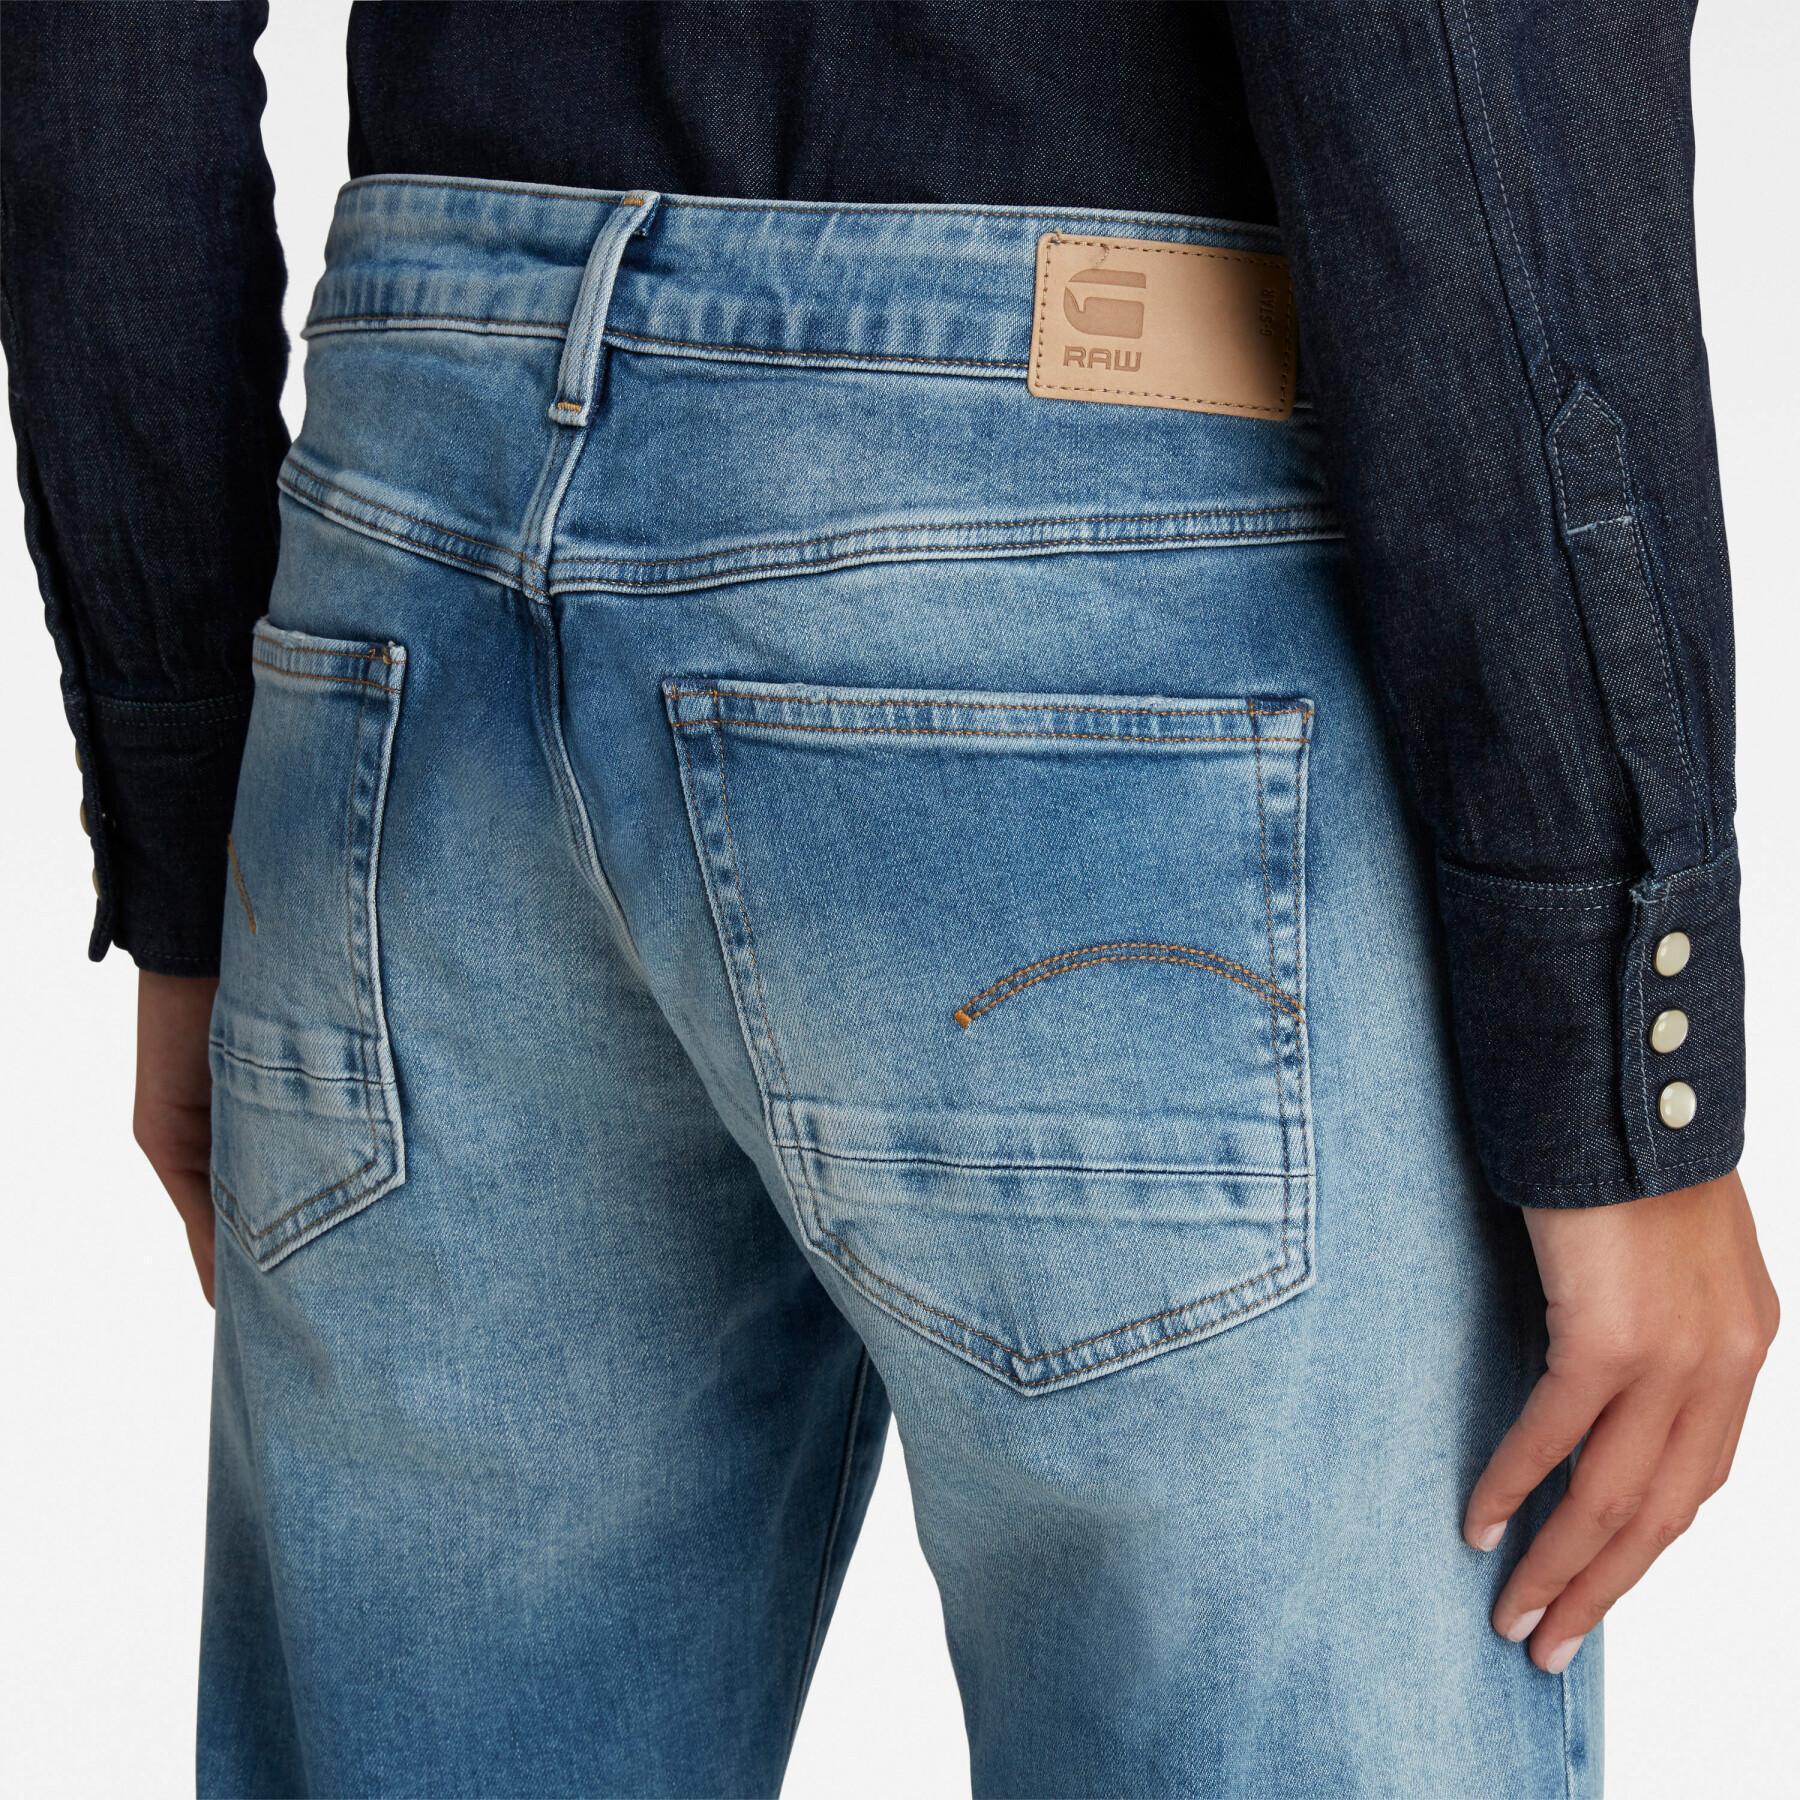 Jeans för kvinnor G-Star Kate Boyfriend